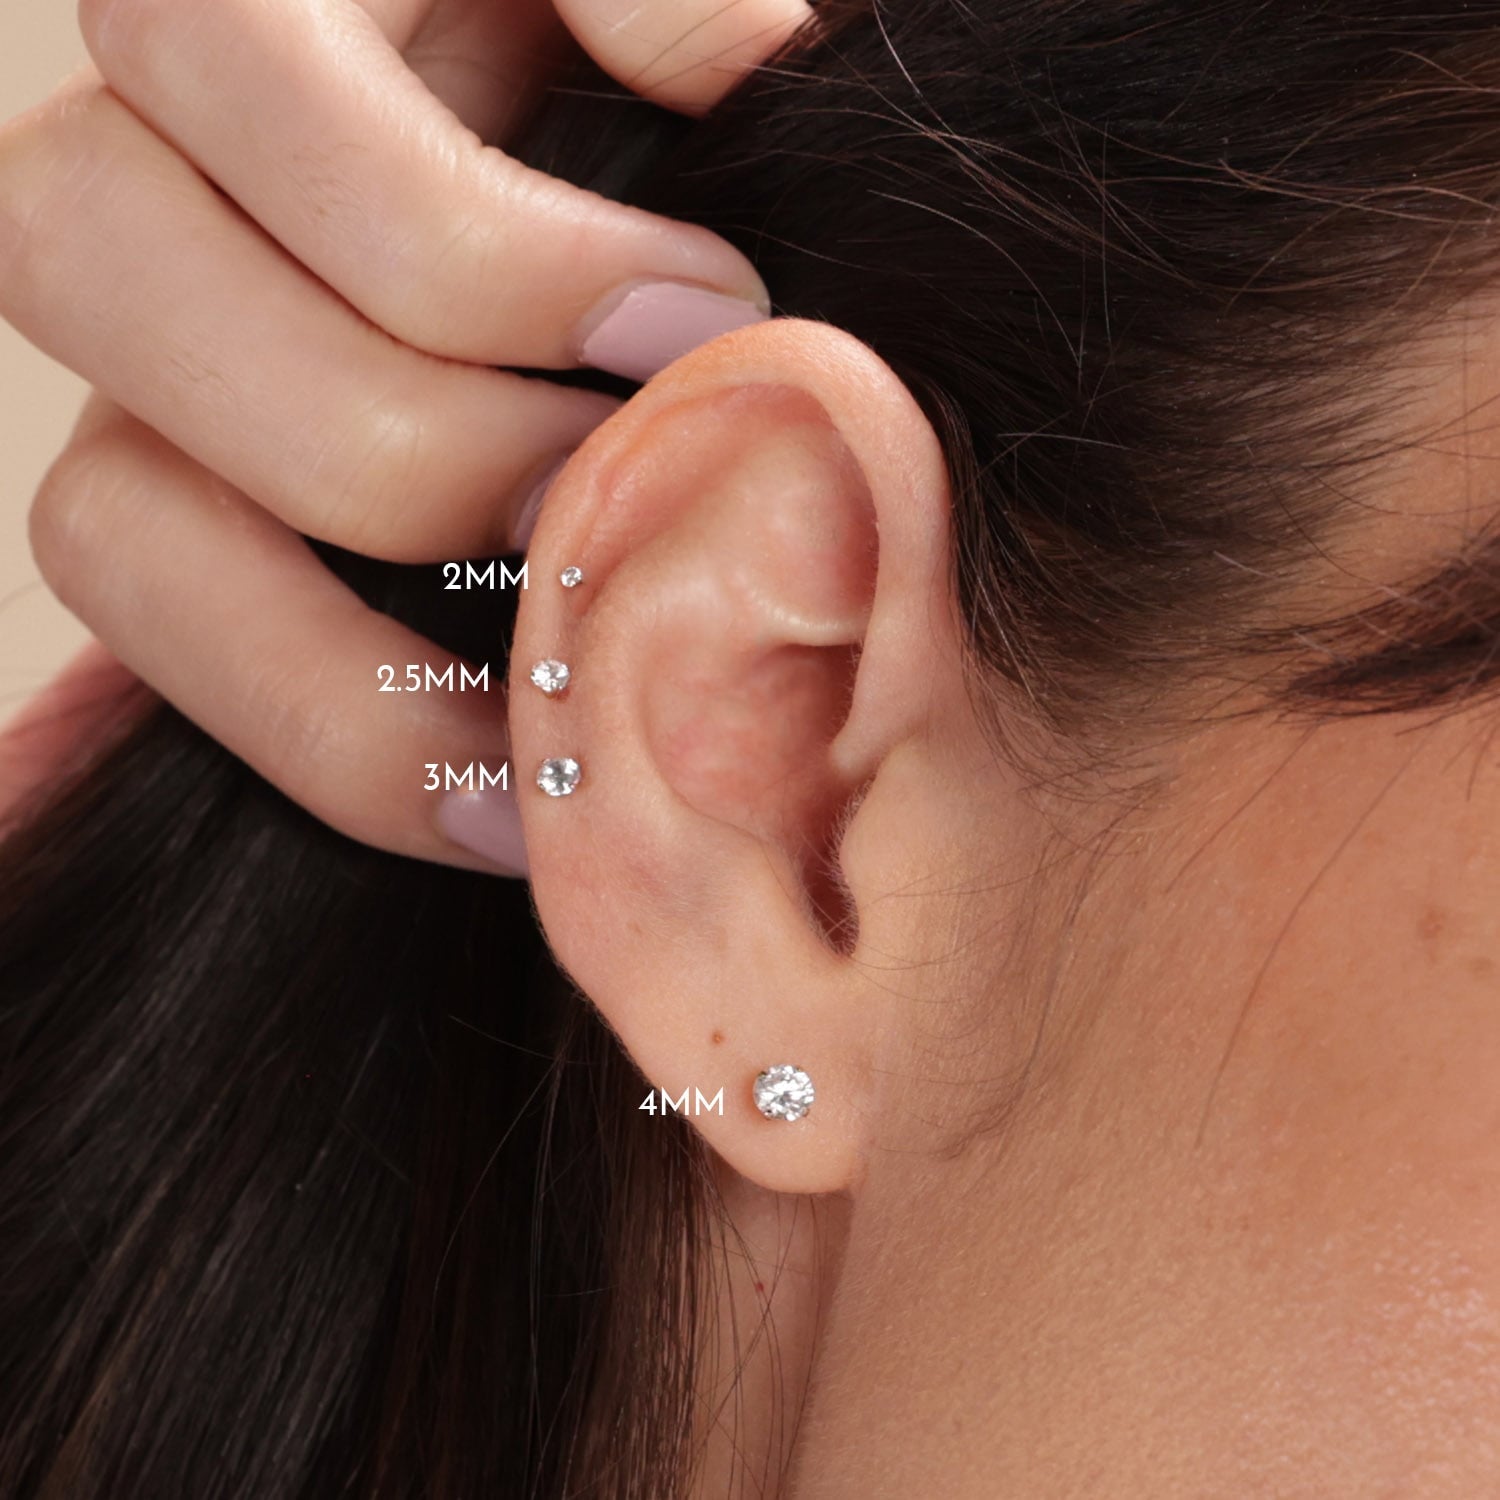 2mm Tiny CZ Cartilage Eearrings,Flat Screw Back Cubic Zirconia Stud Earrings Helix Earrings Hypoallergenic Steel Flatback Cartilage Piercing Jewelry